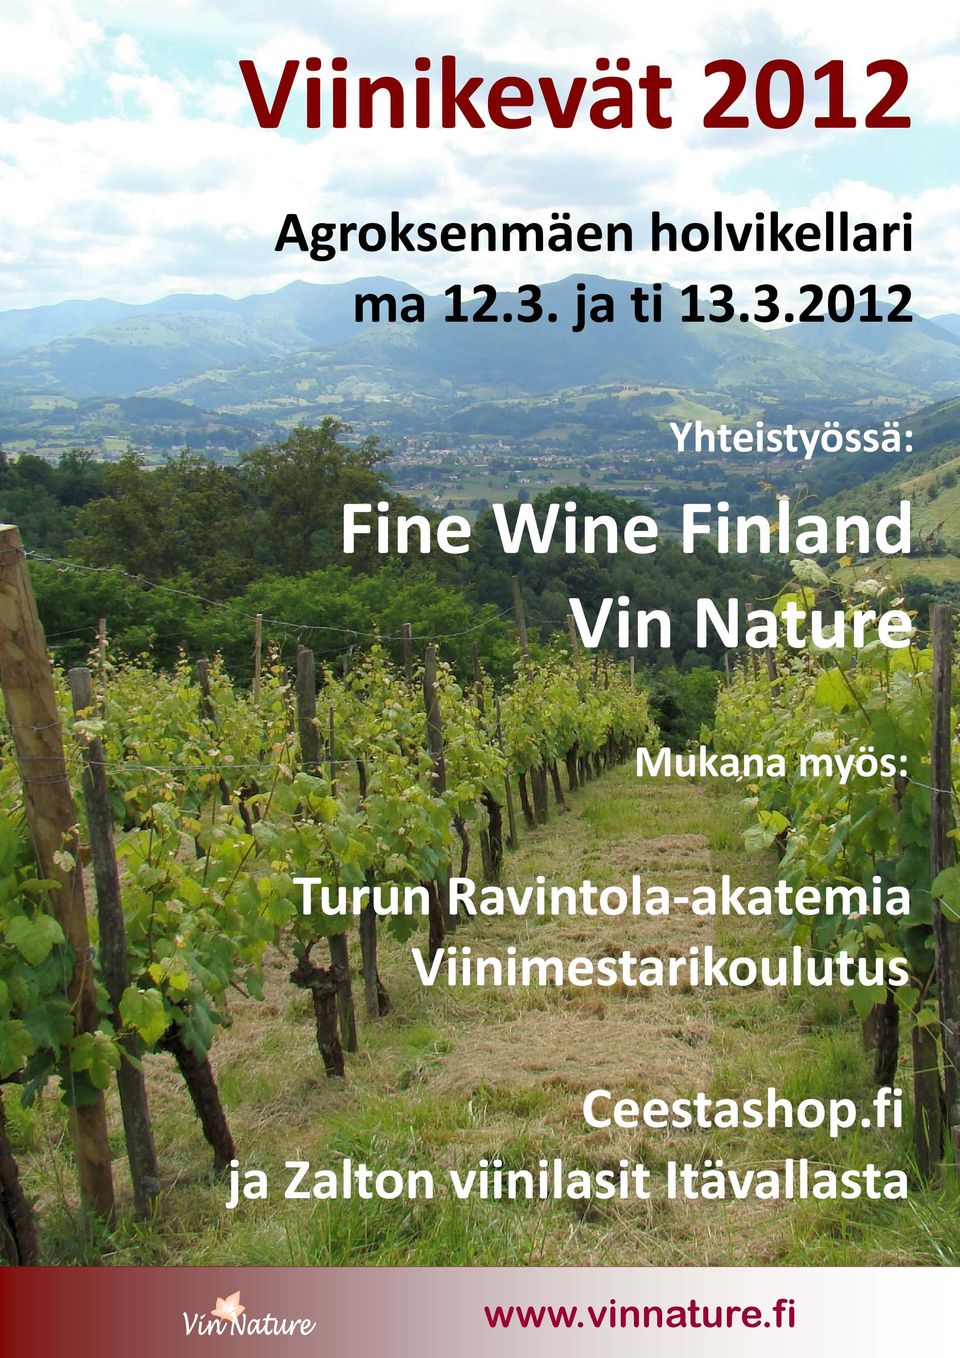 3.20 Yhteistyössä: Fine Wine Finland Vin Nature